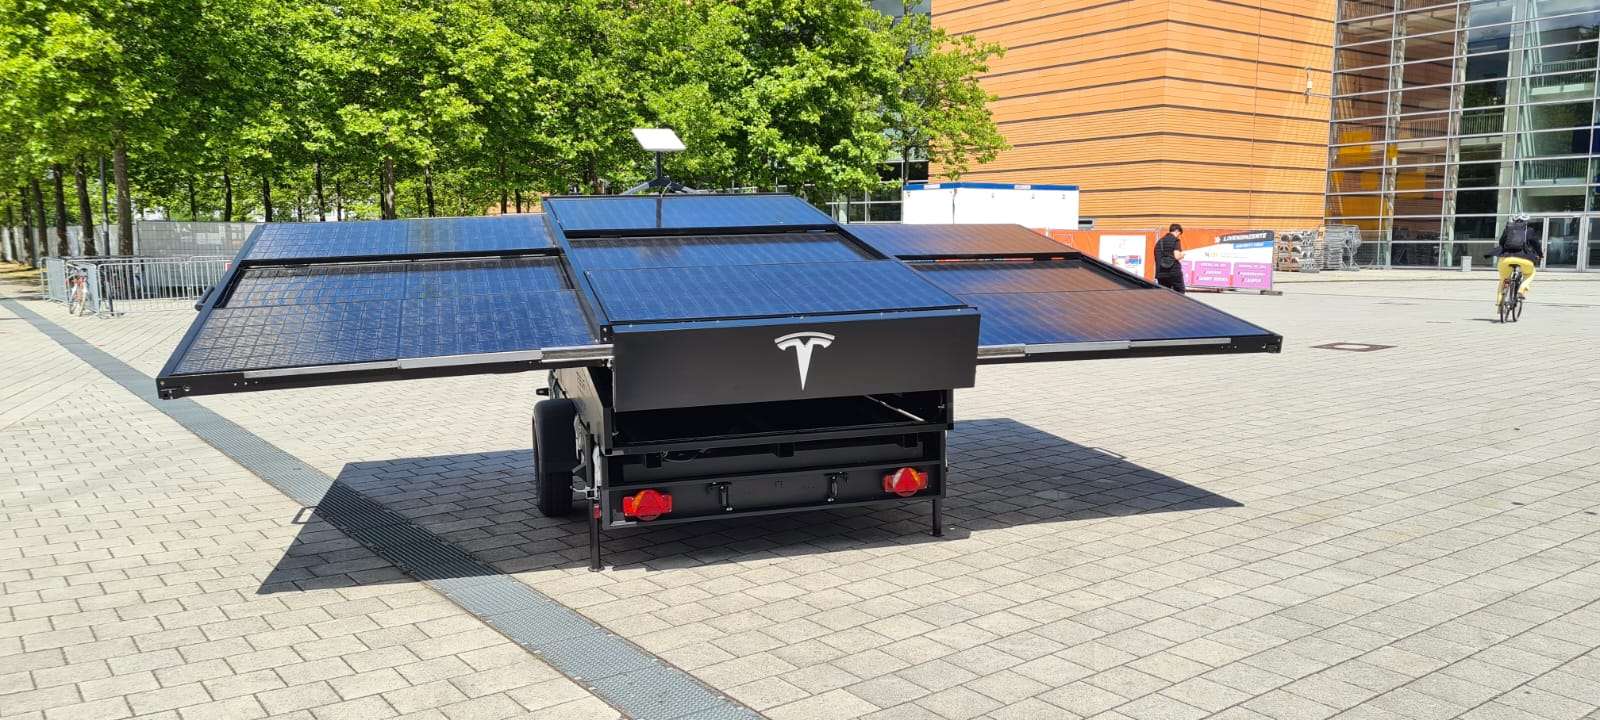 La remorque photovoltaïque avec récepteur satellite Starlink présentée par Tesla au salon IdeenExpo. © @Tesla_Adri (via Electrek)